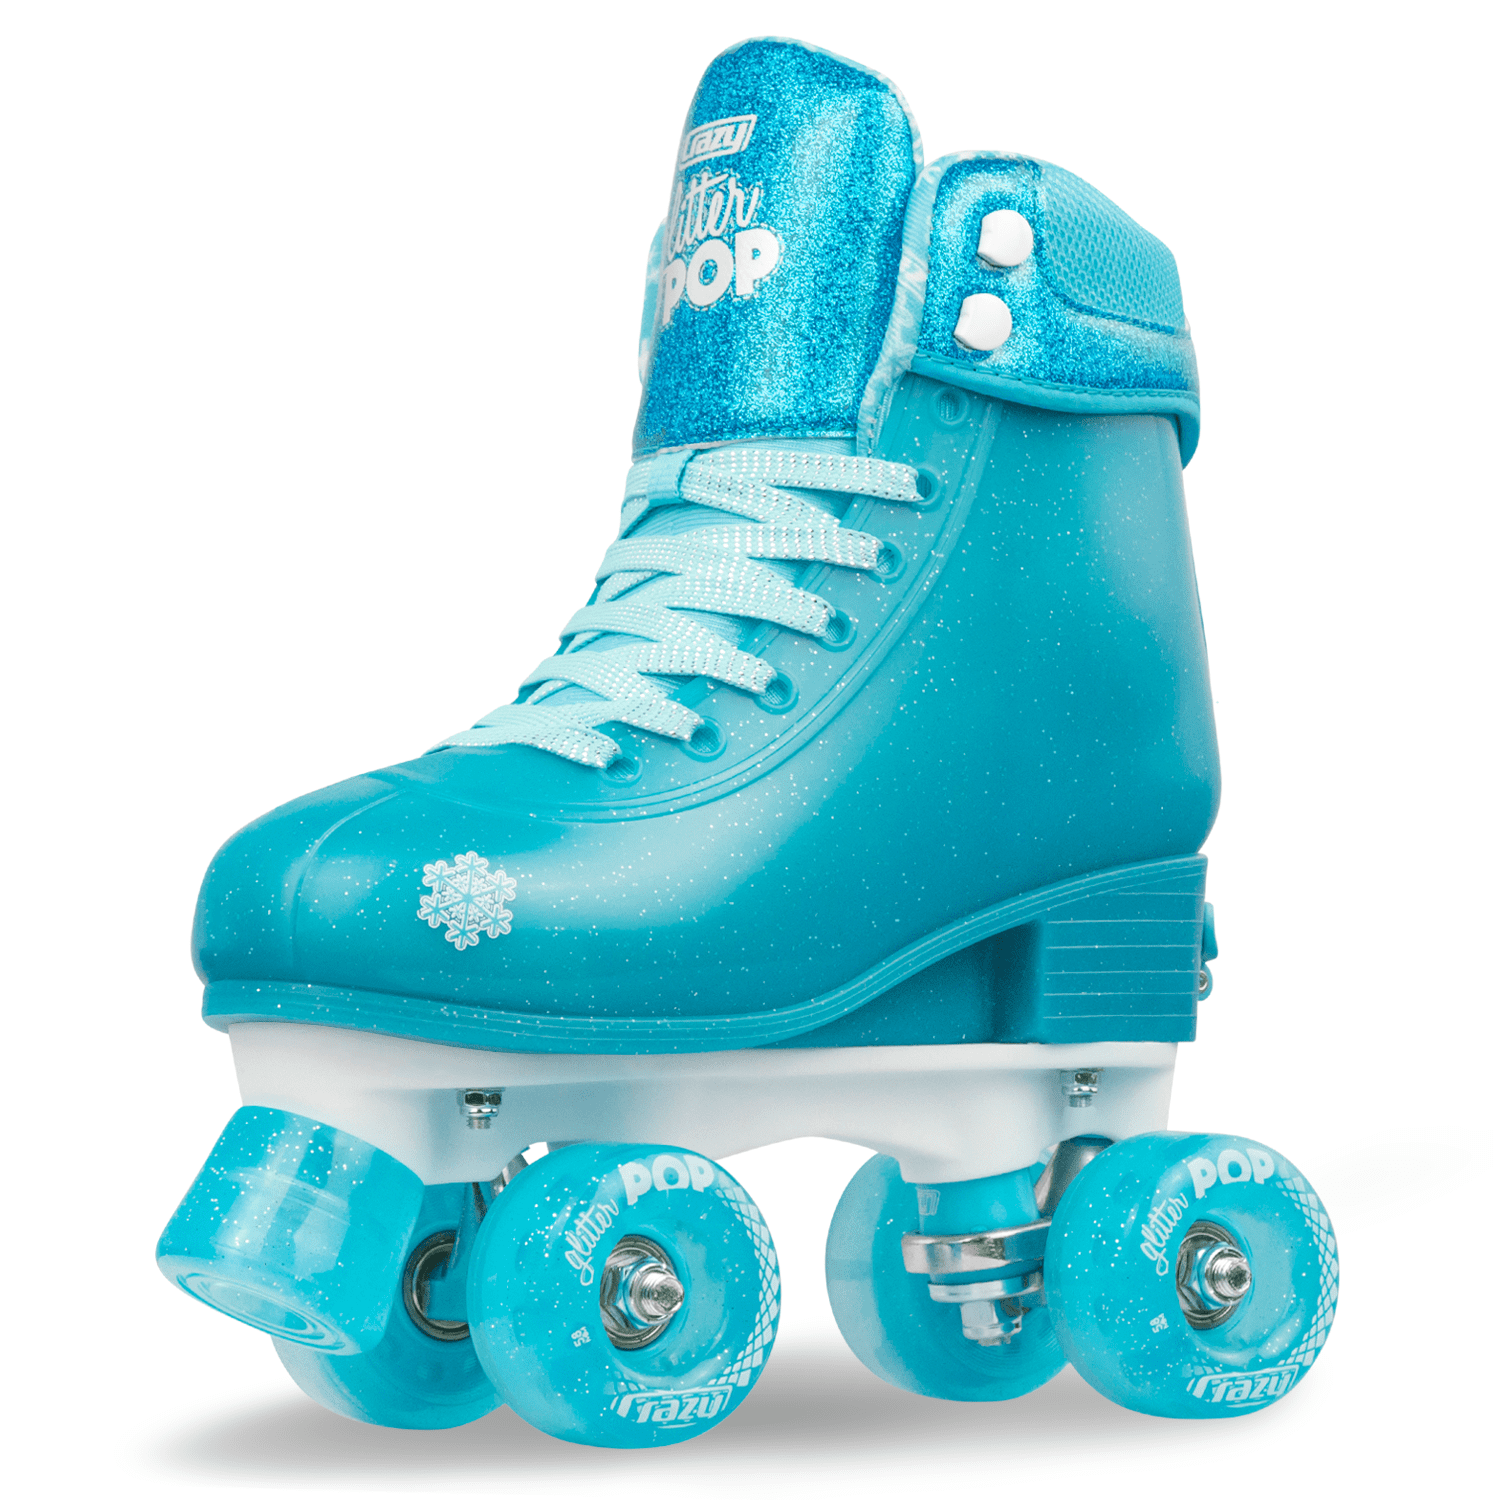 Adjustable Disney Frozen Kids Roller Skates Size 1-4 for sale online 